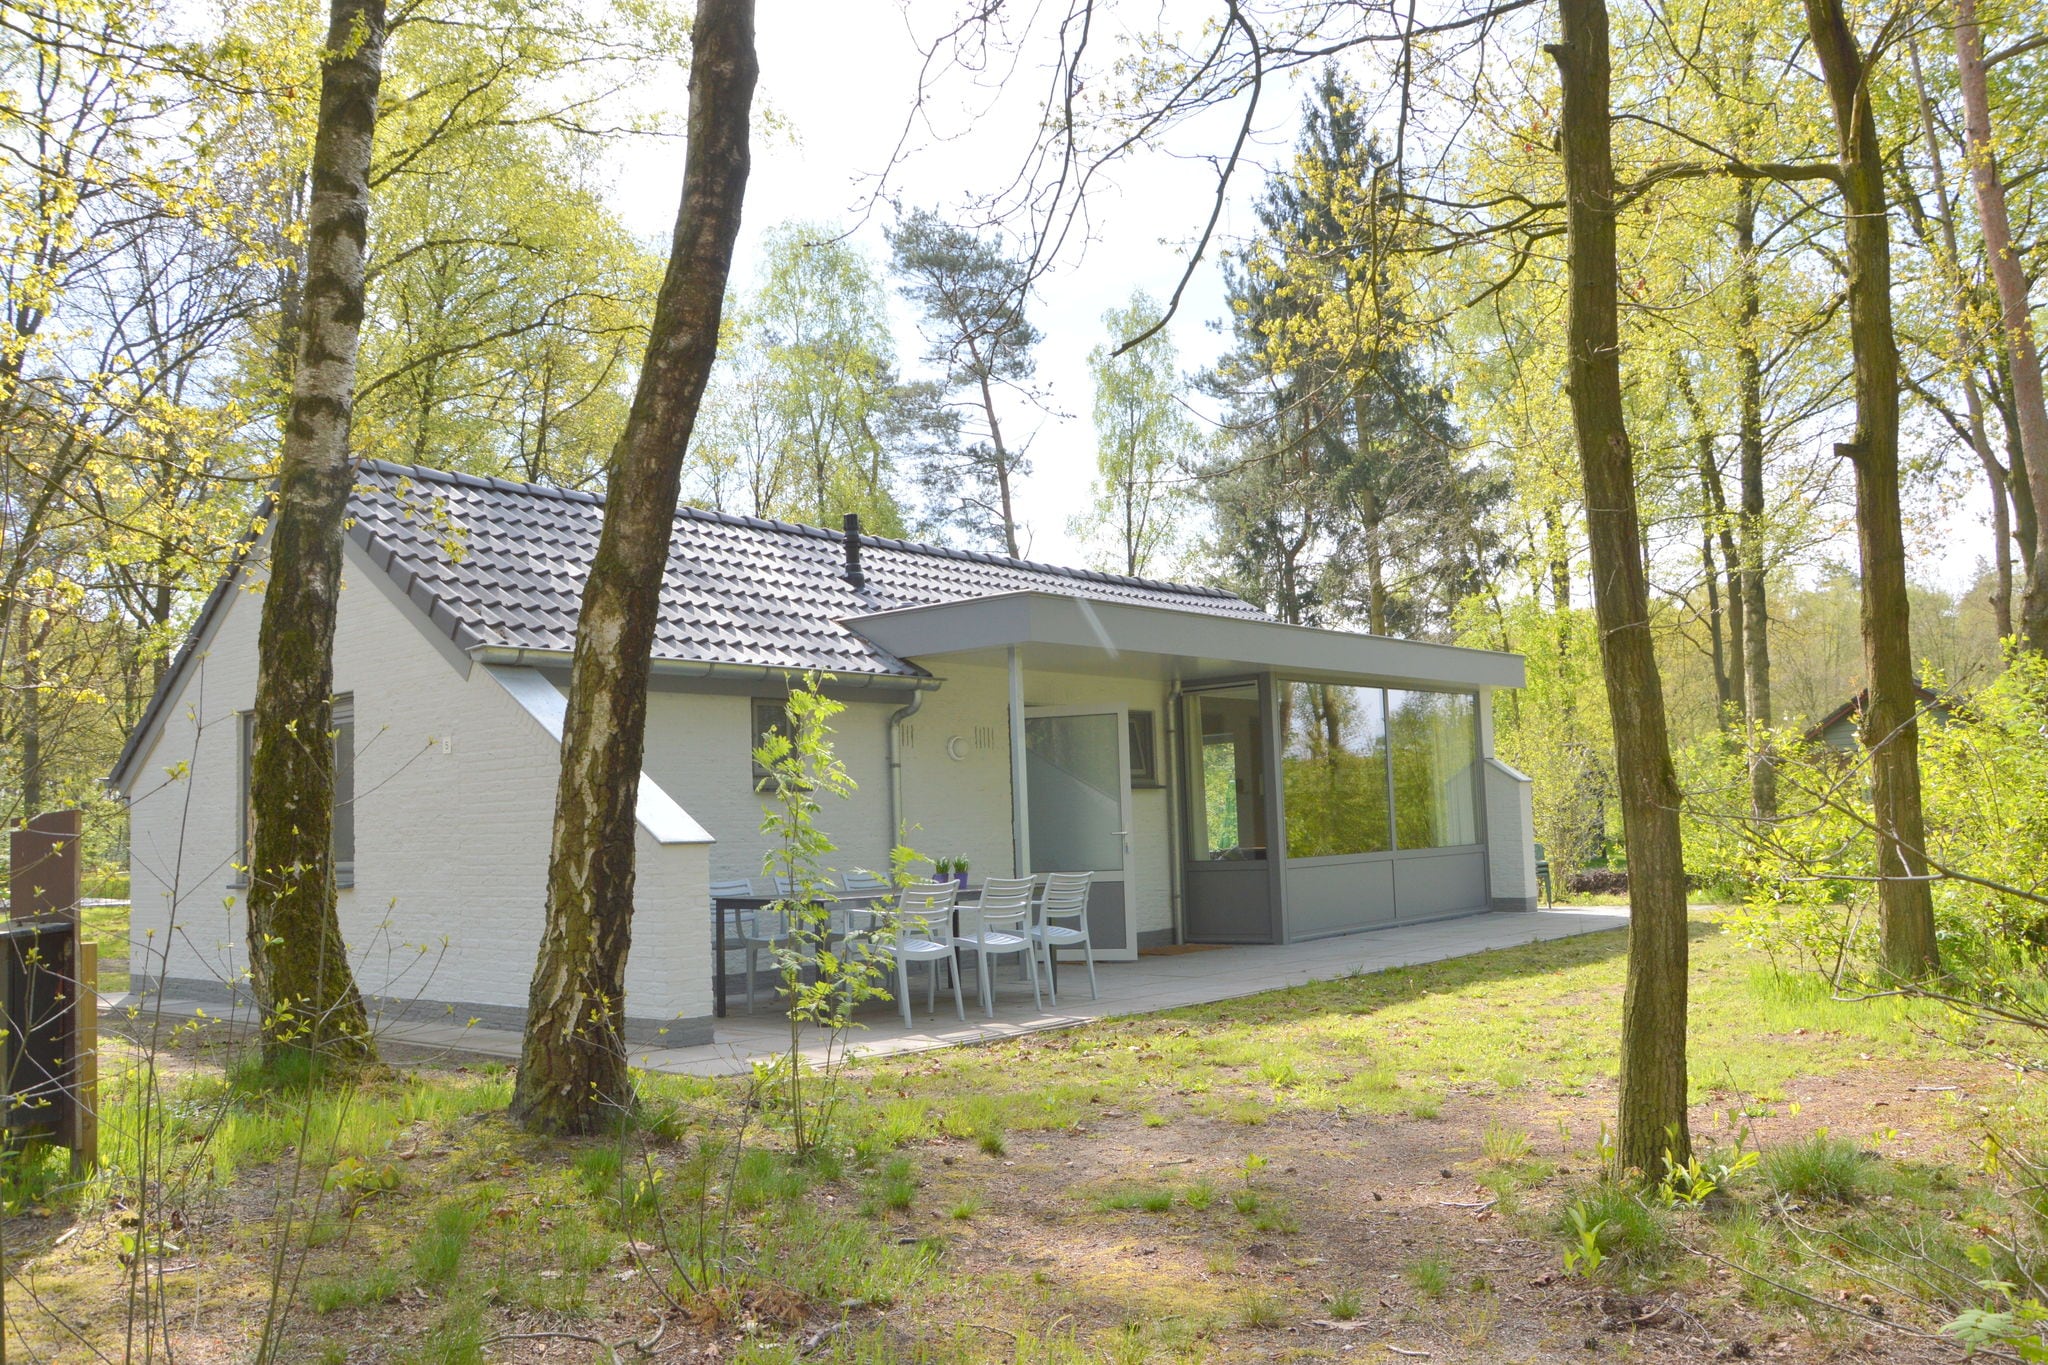 Ferienwohnung in Limburg, in dichtem Wald